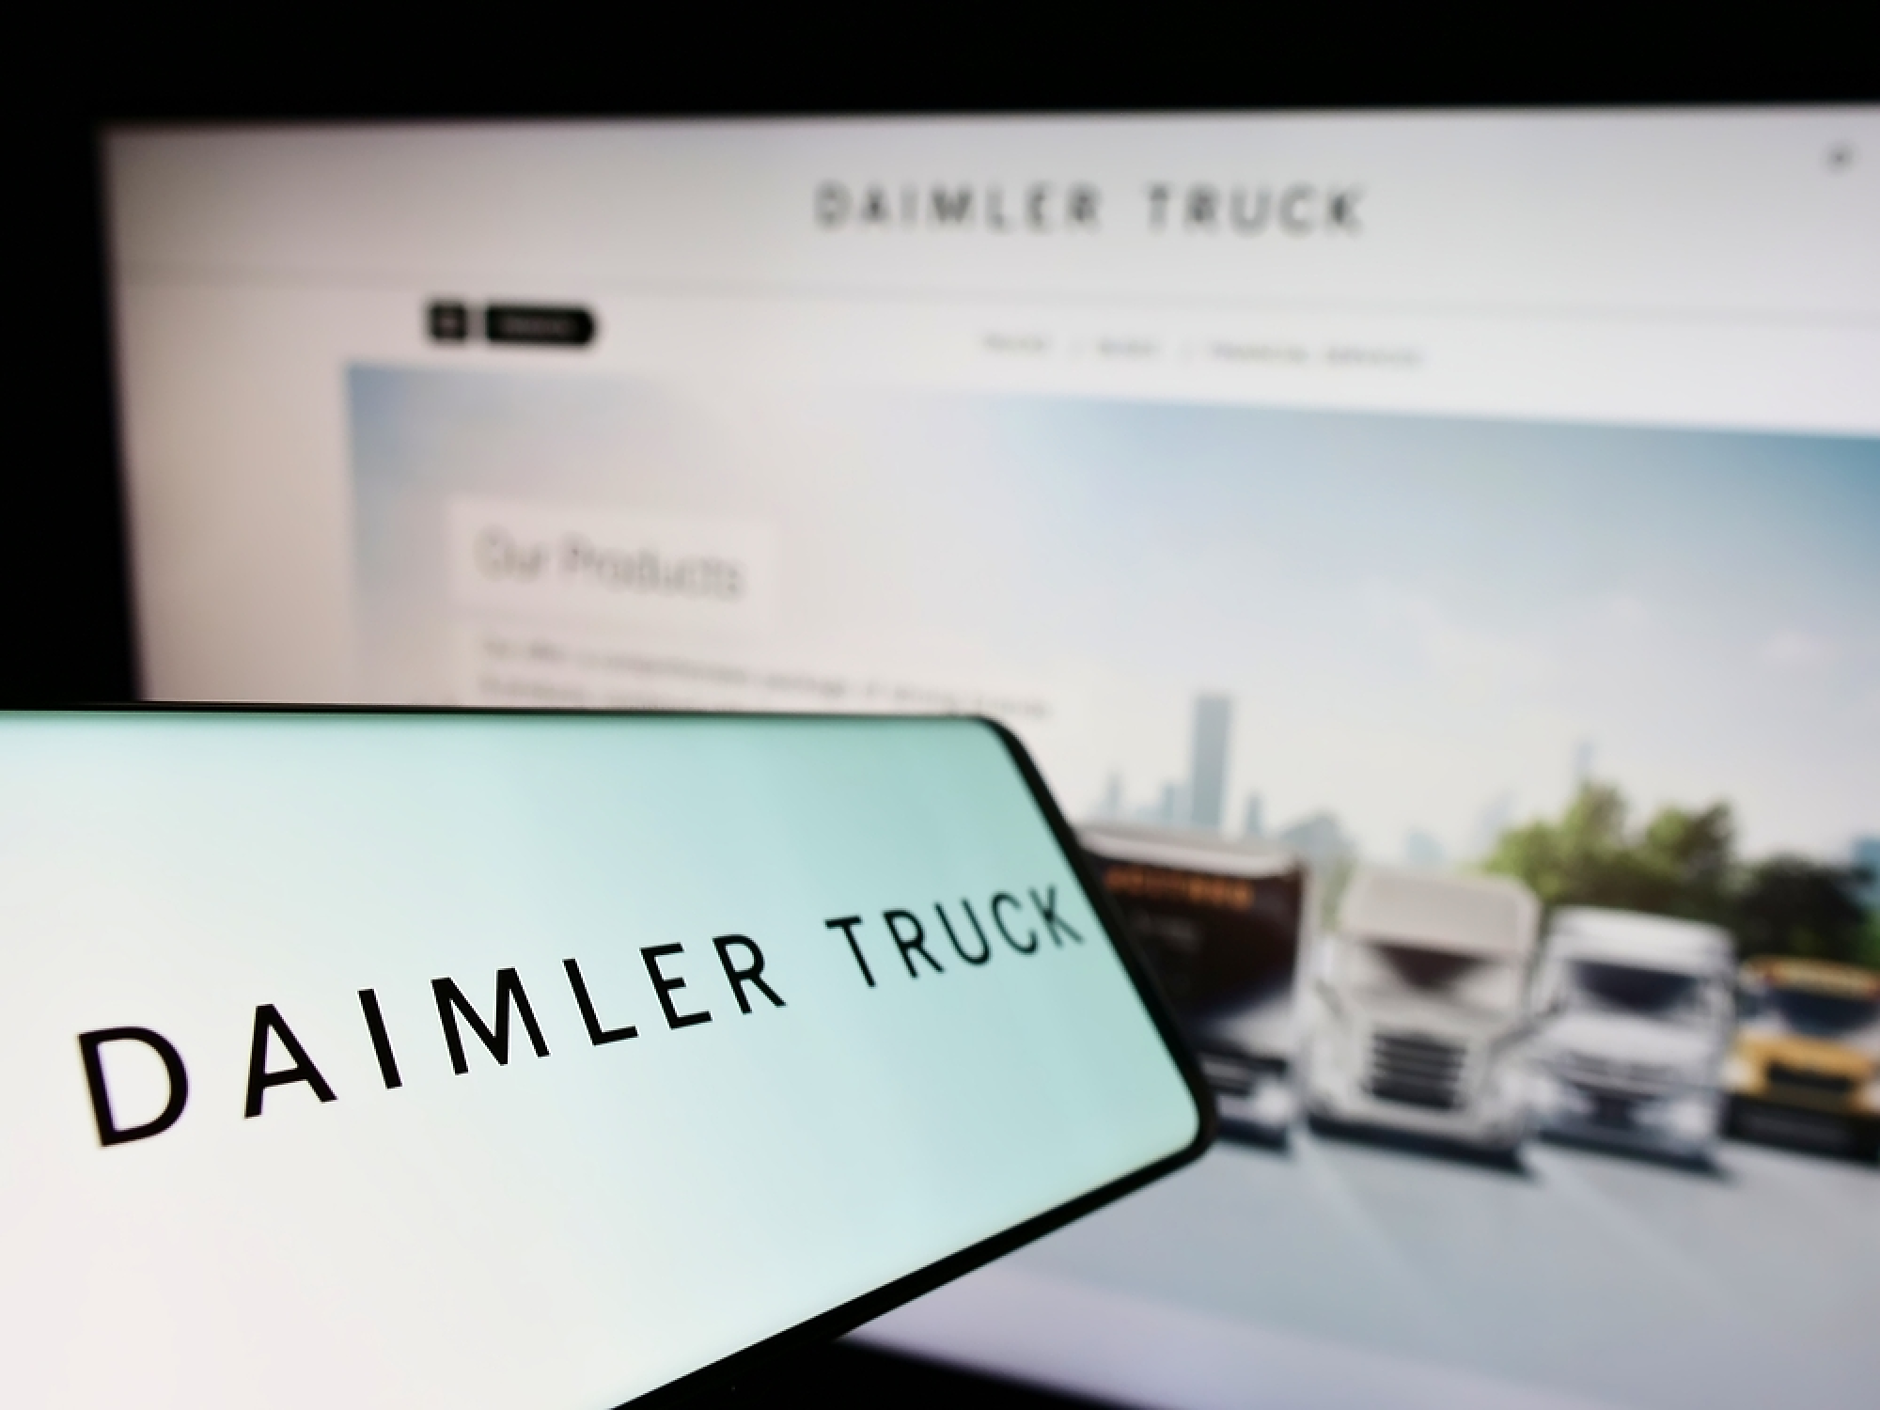 Шефът на Daimler Truck бие тревога заради зависимостта от китайските батерии за електромобили